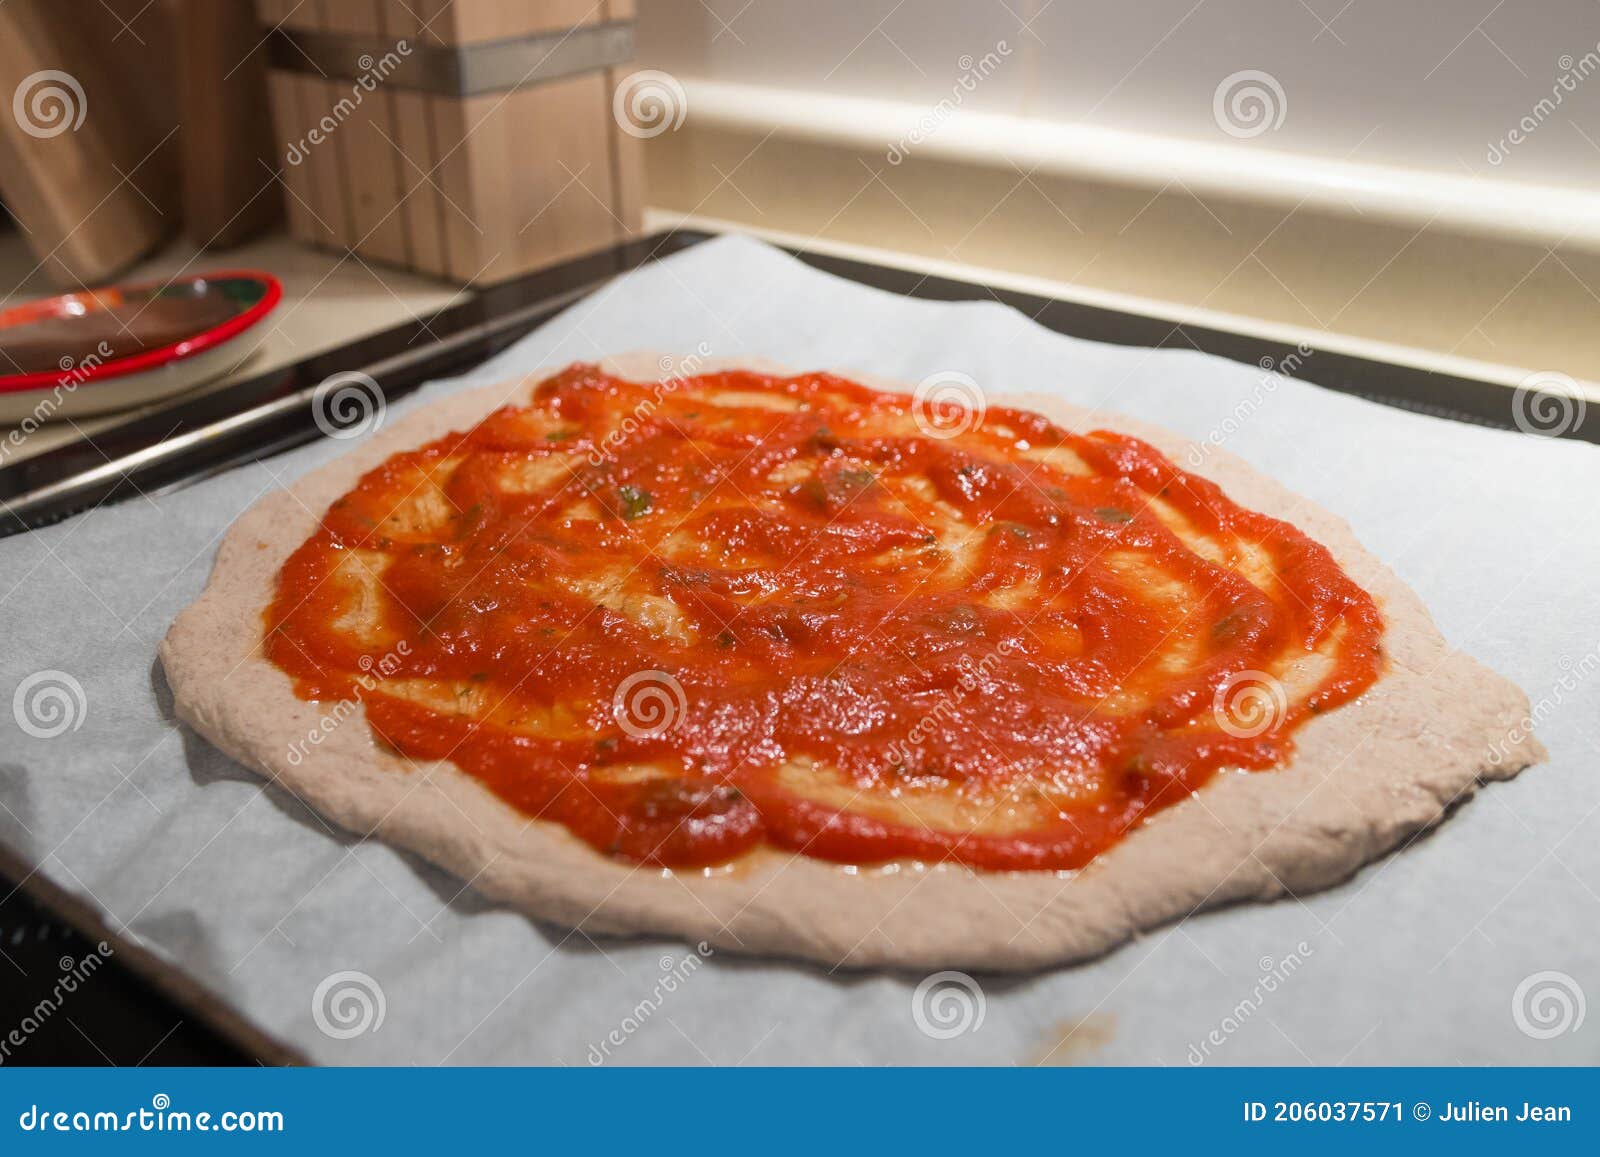 Salsa De Tomate Casera Fresca Sobre Una Pasta Fresca De Pizza Italiana  Imagen de archivo - Imagen de ingrediente, revuelto: 206037571